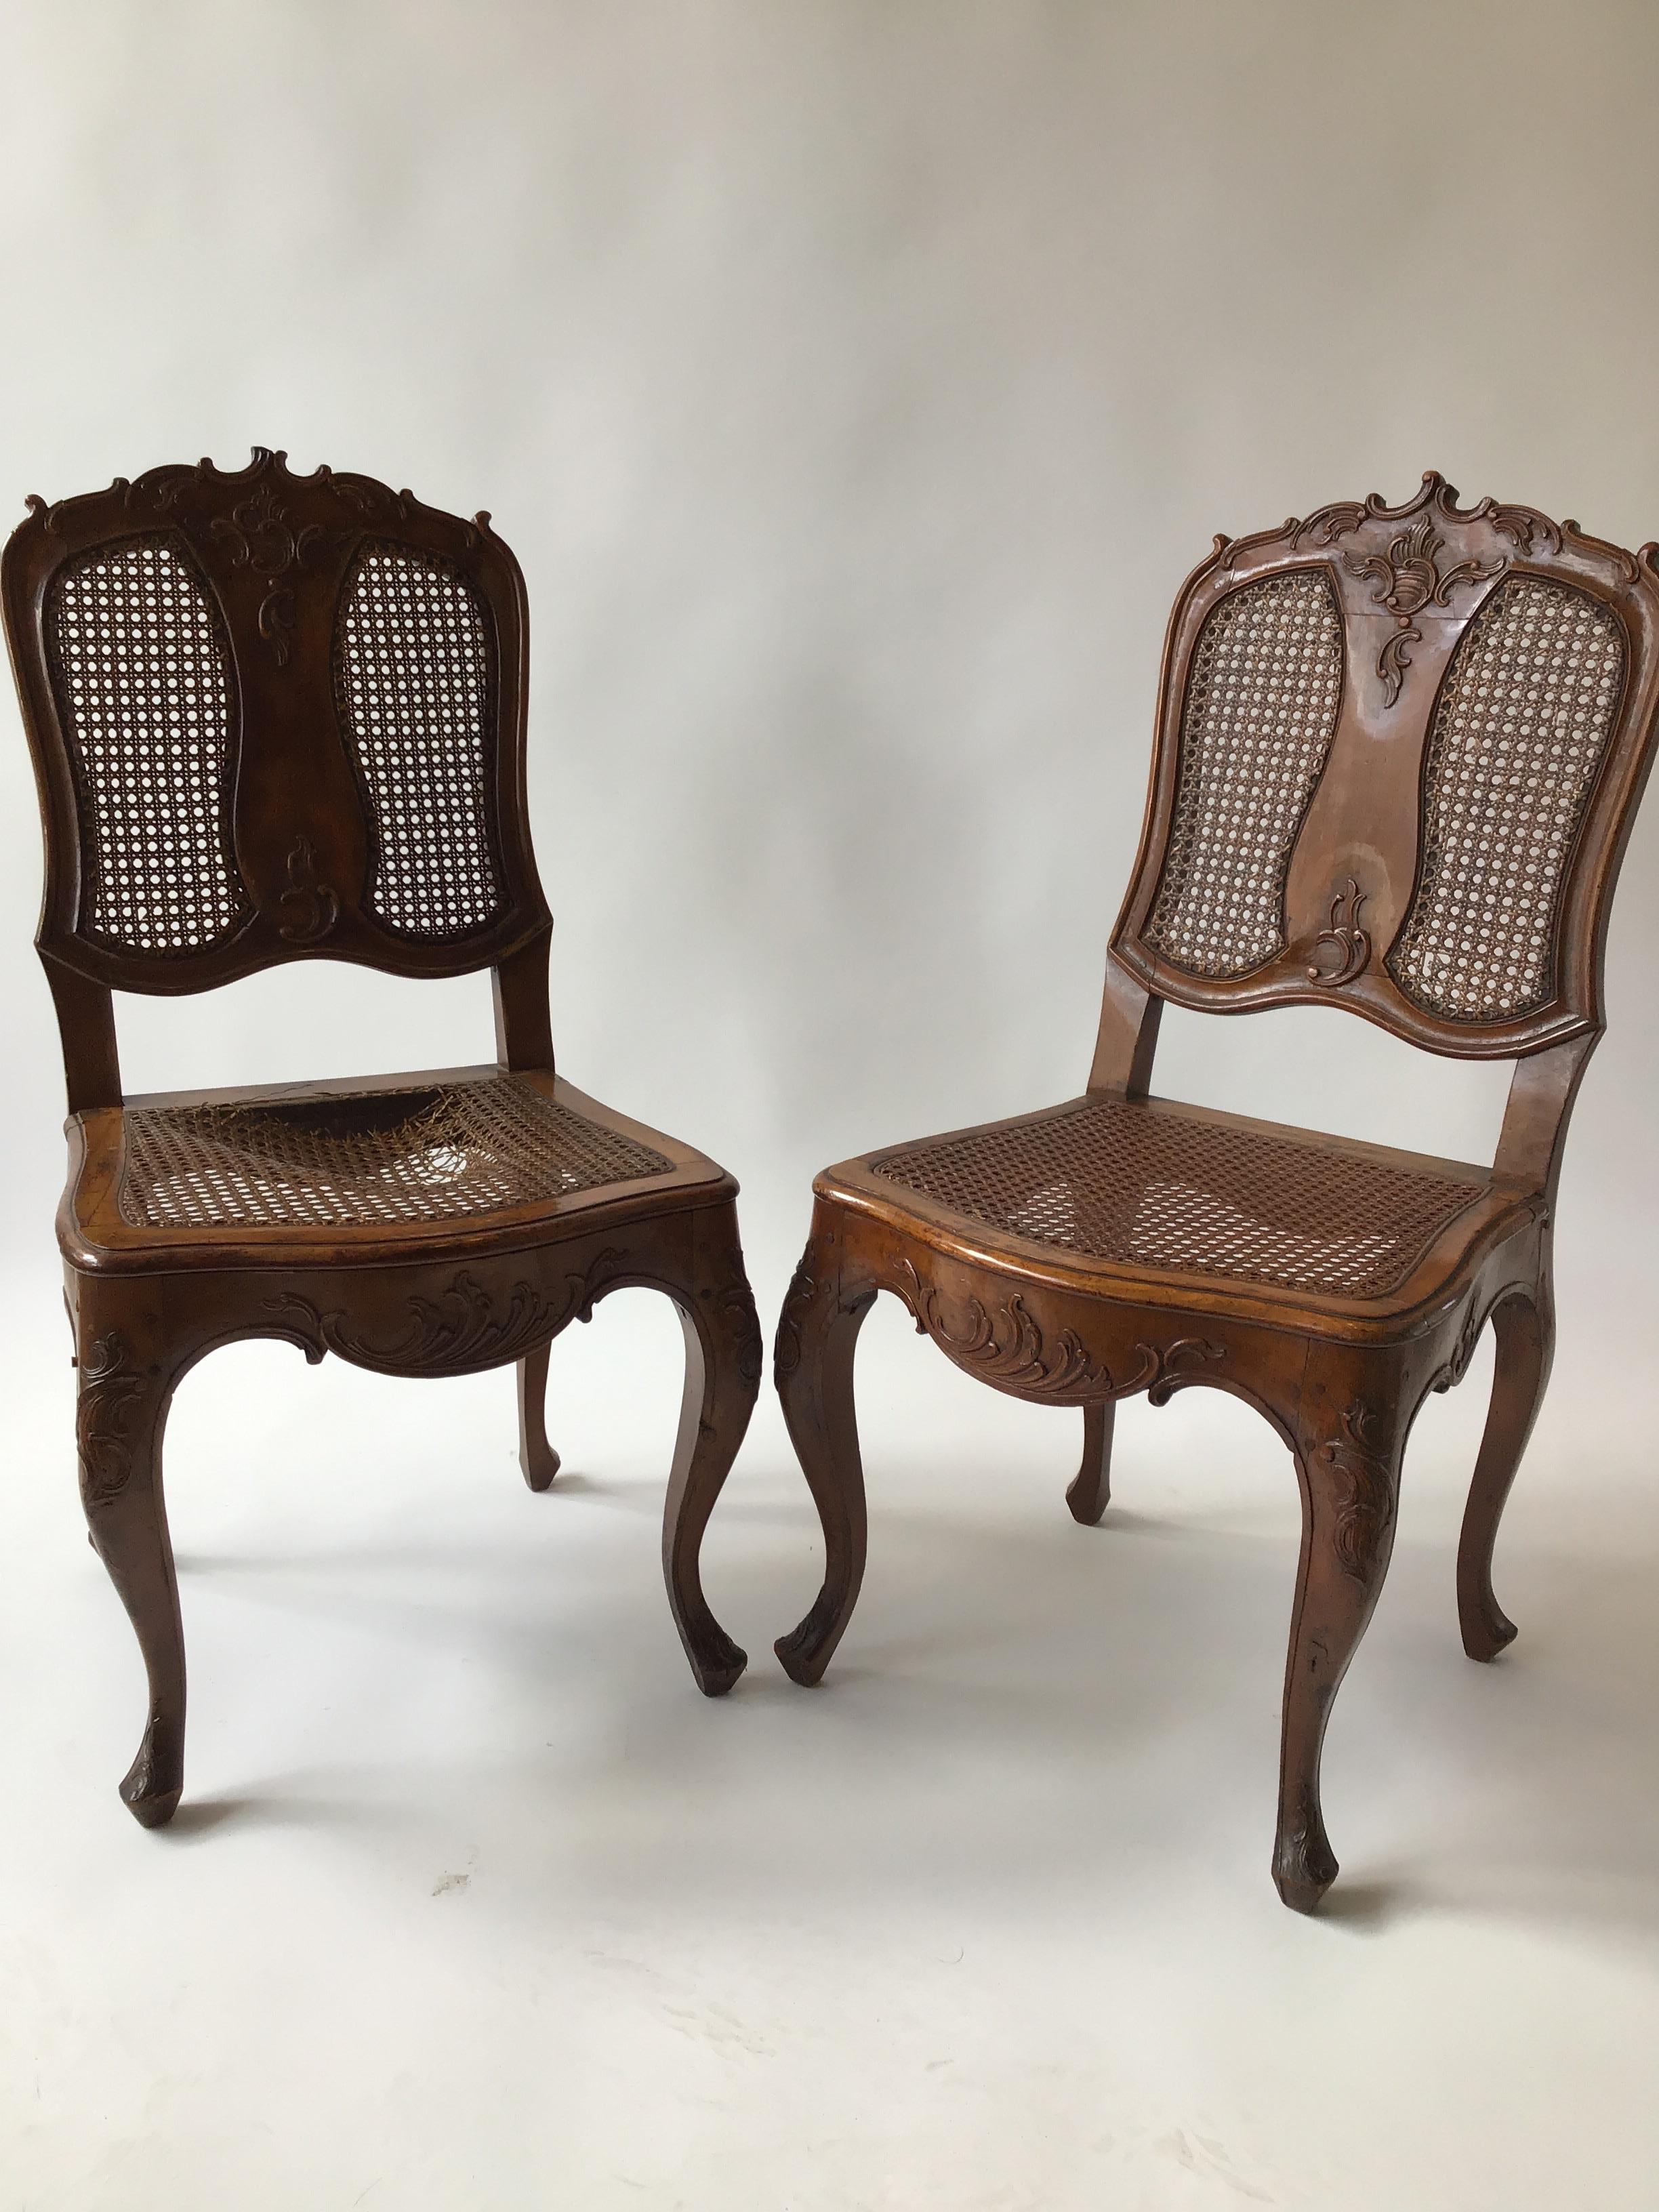 Paire de chaises latérales sculptées à la main, datant des années 1880.